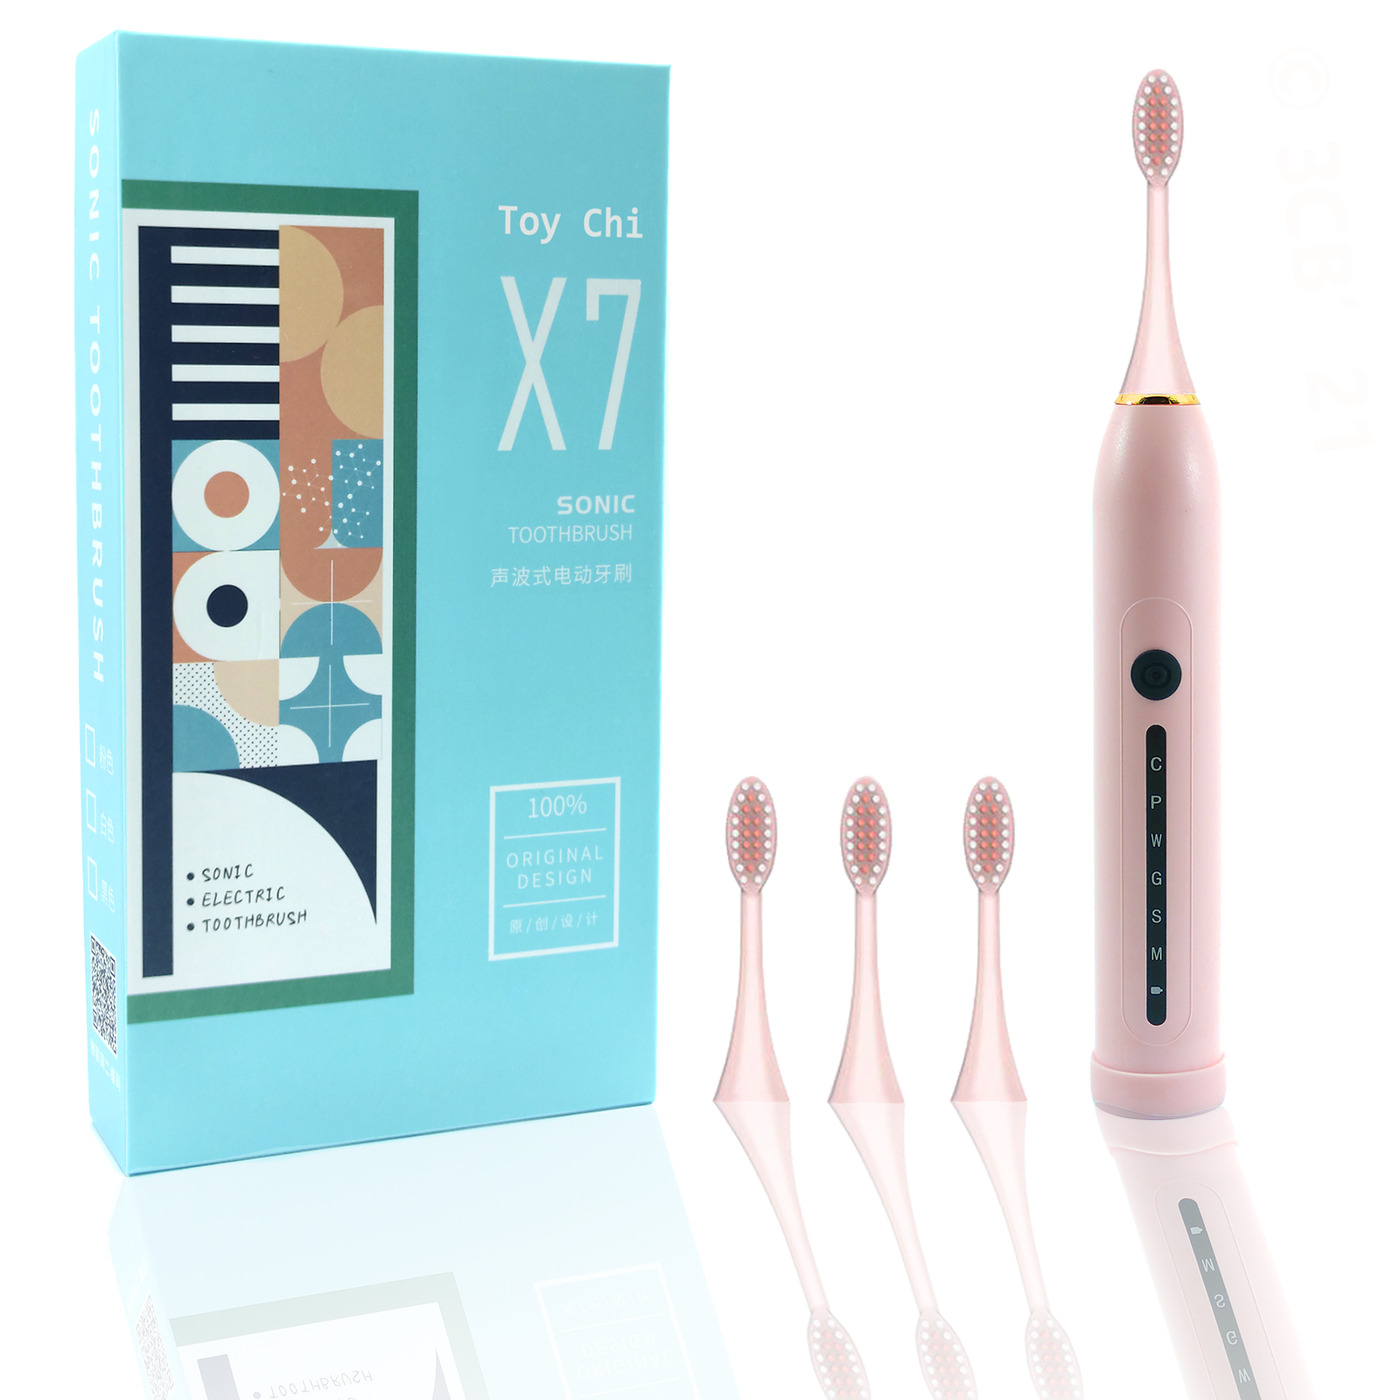 Электрическая зубная щетка ультразвуковая Toy Chi X7 SONIC Toothbrush, розовая зубная щетка электрическая sonic toothbrush x 3 white